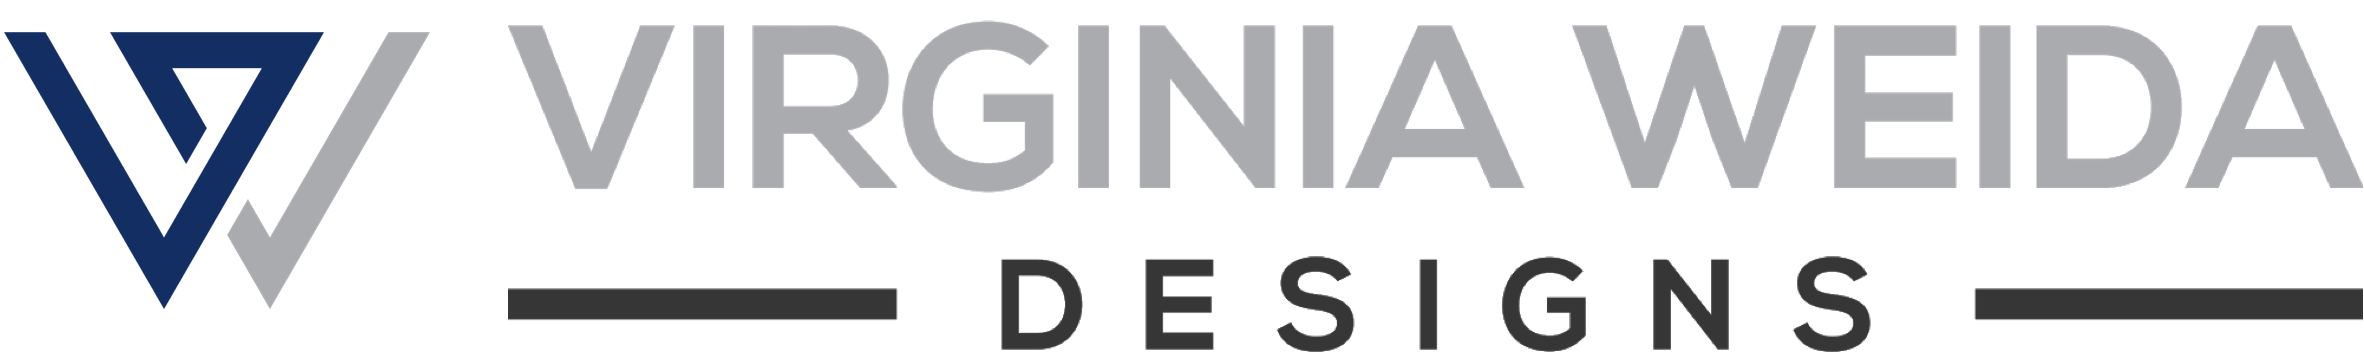 Virginia Weida Designs LLC